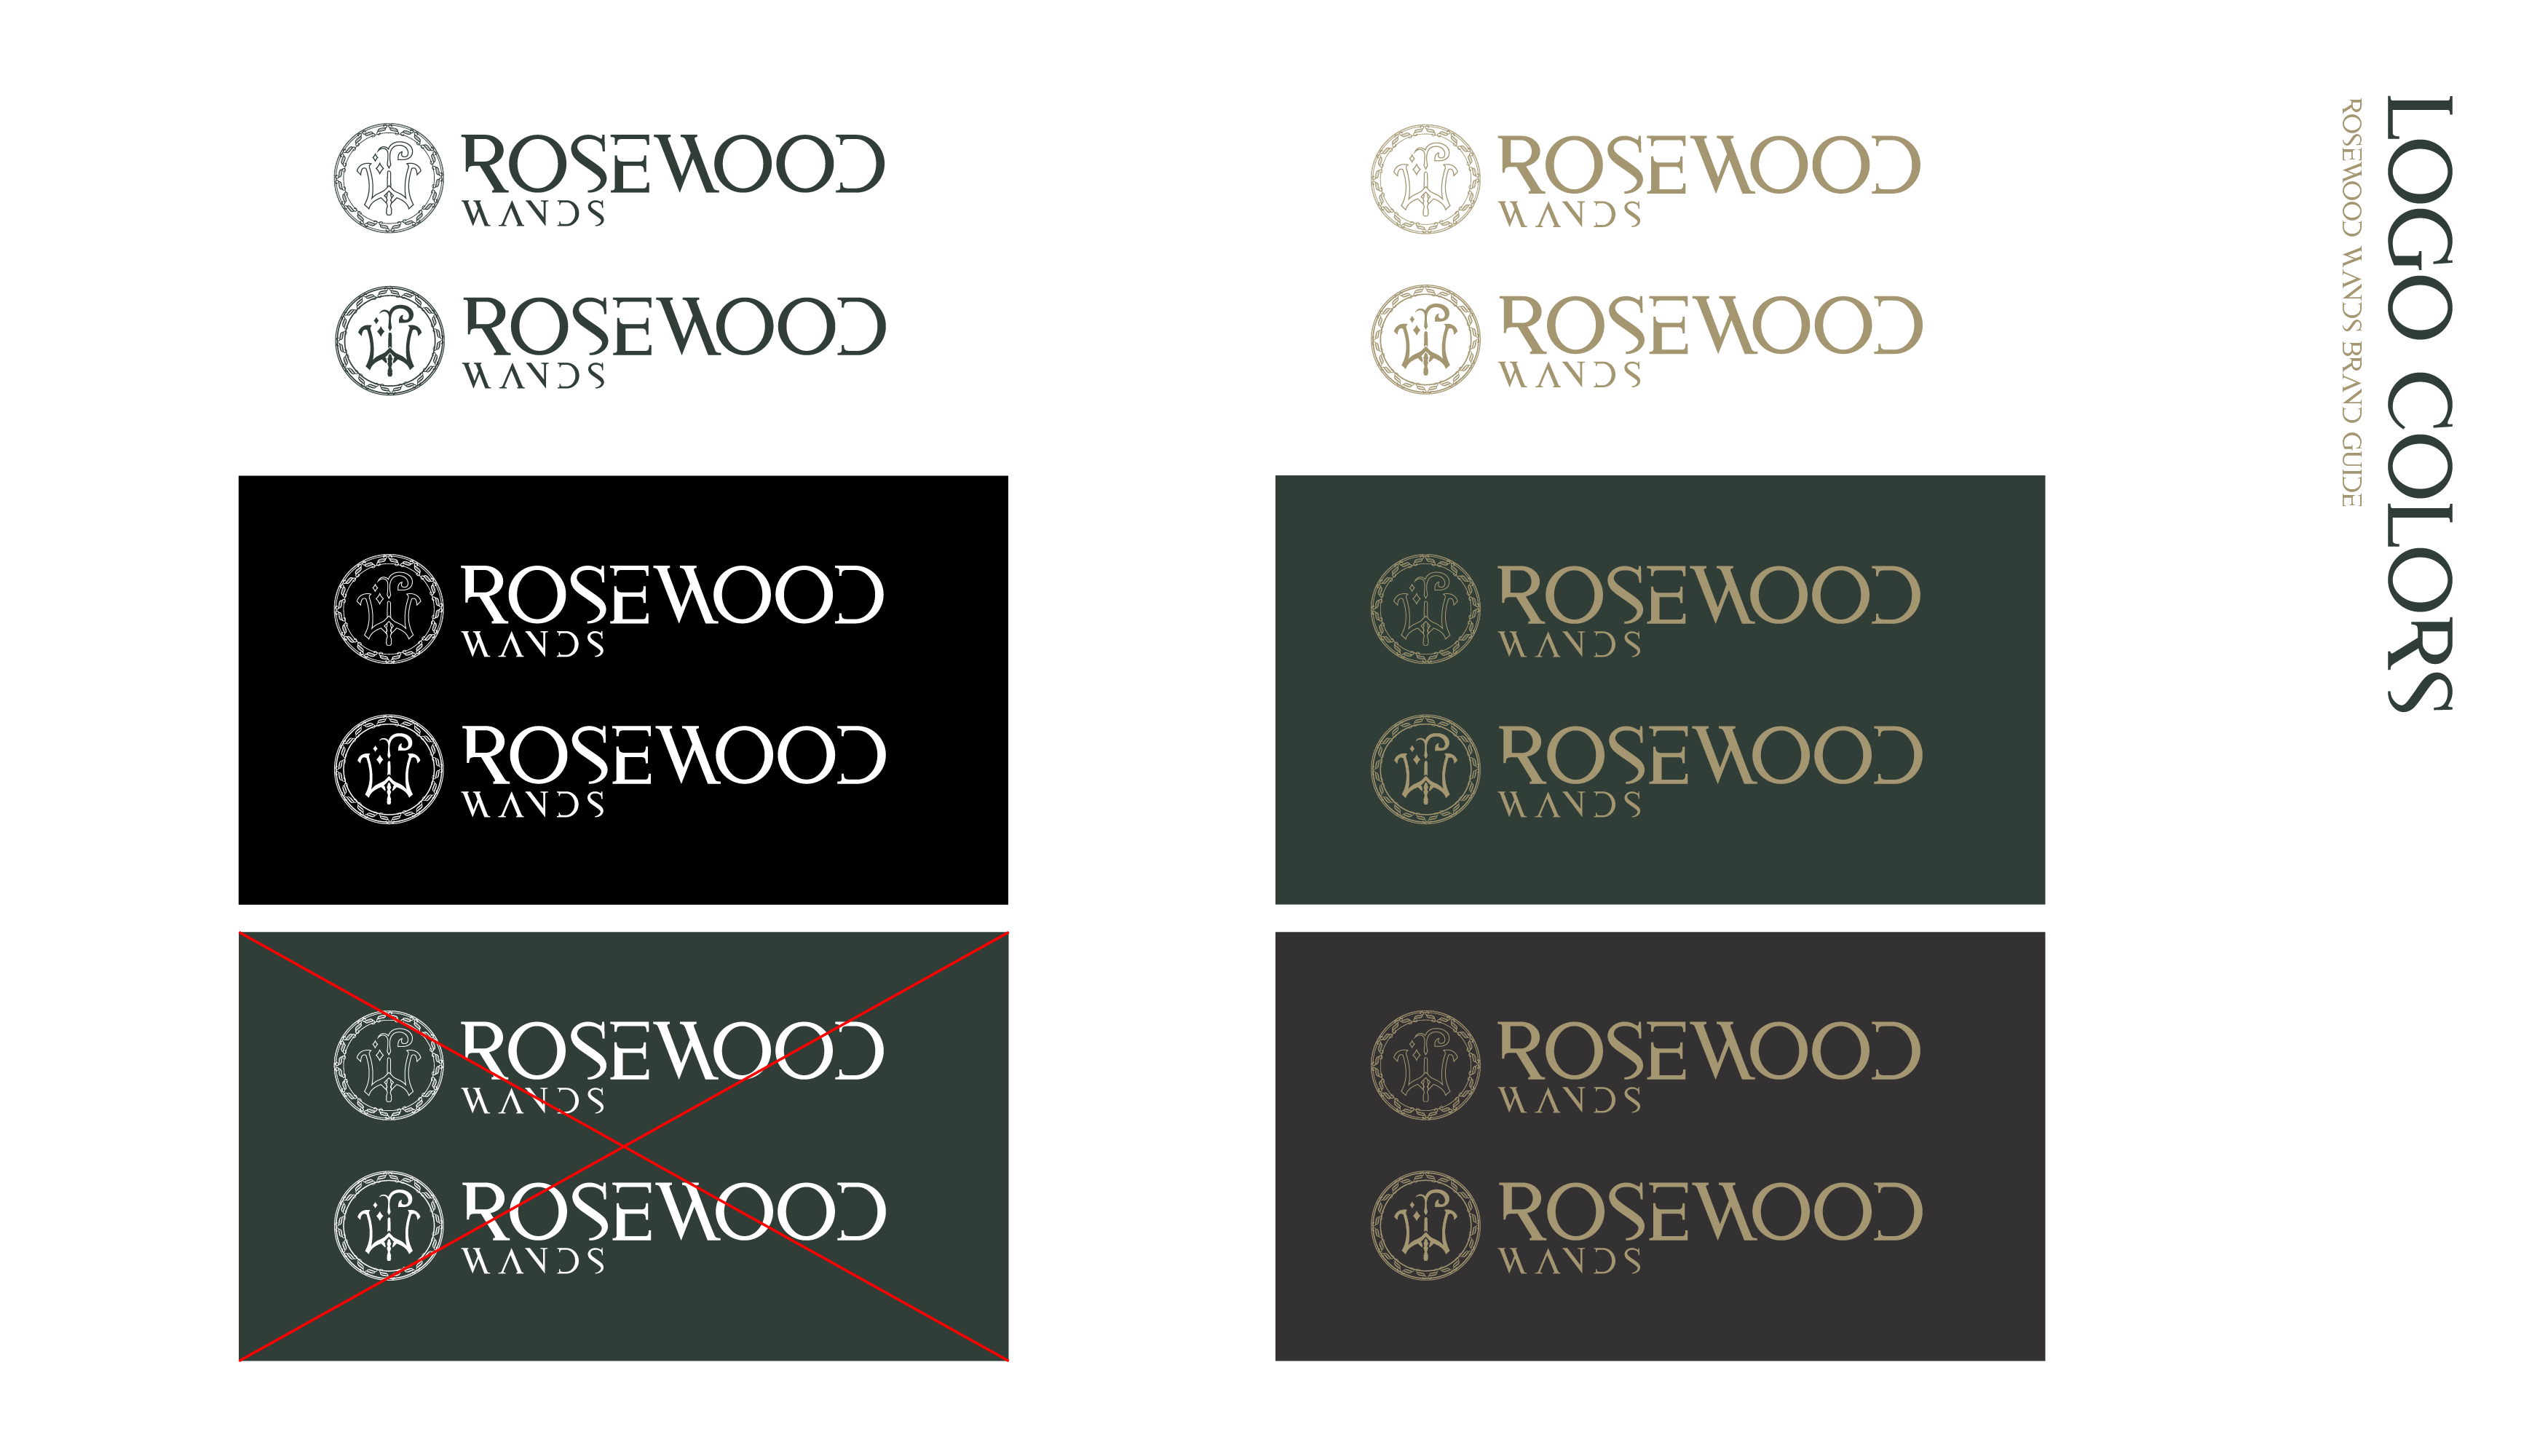 RosewoodWands-BrandGuide7